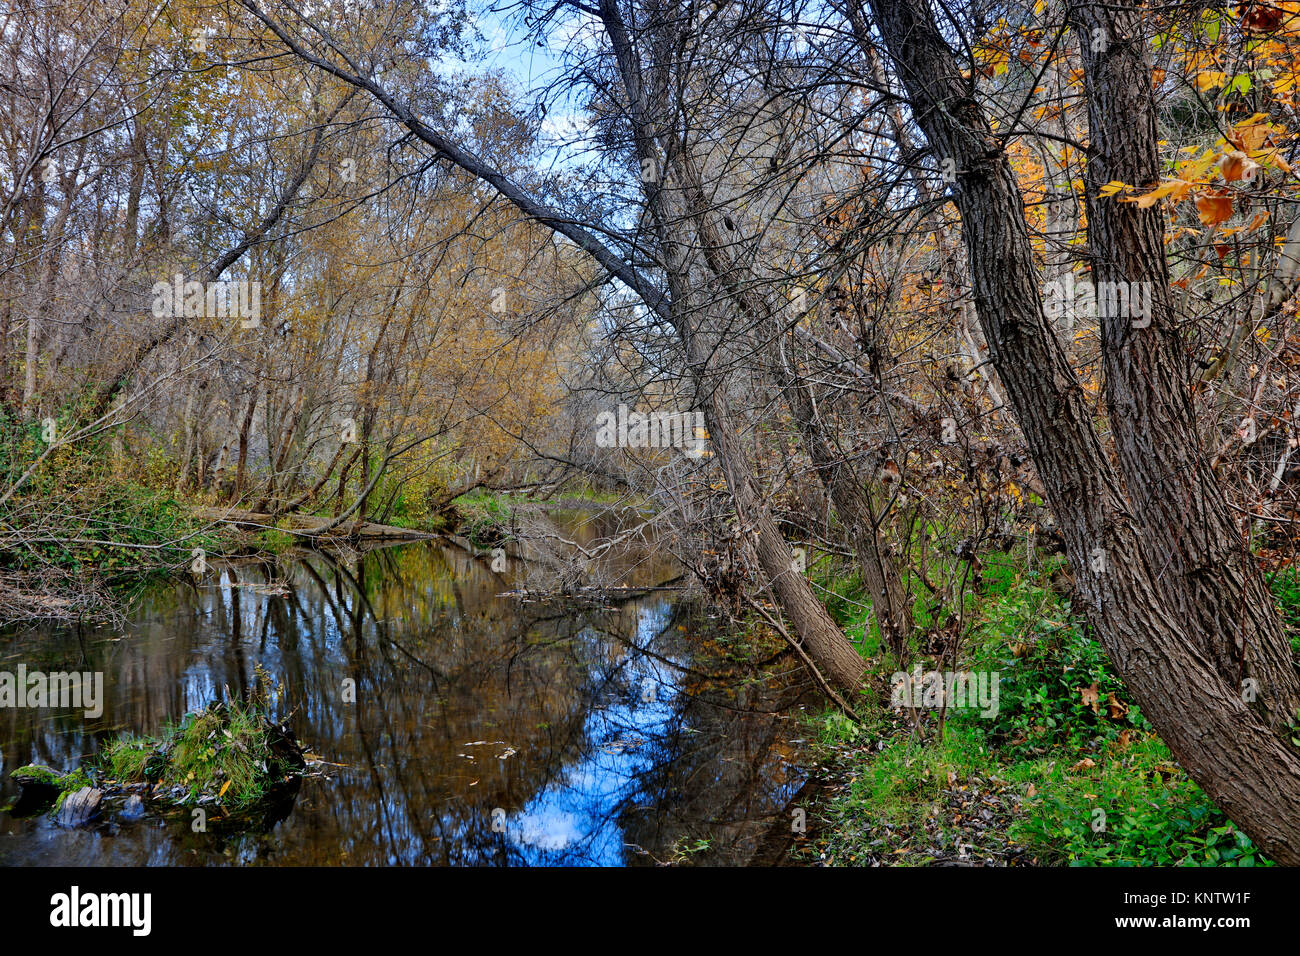 Der Carmel River getarnt im Herbst Laub - Carmel Valley, Kalifornien Stockfoto